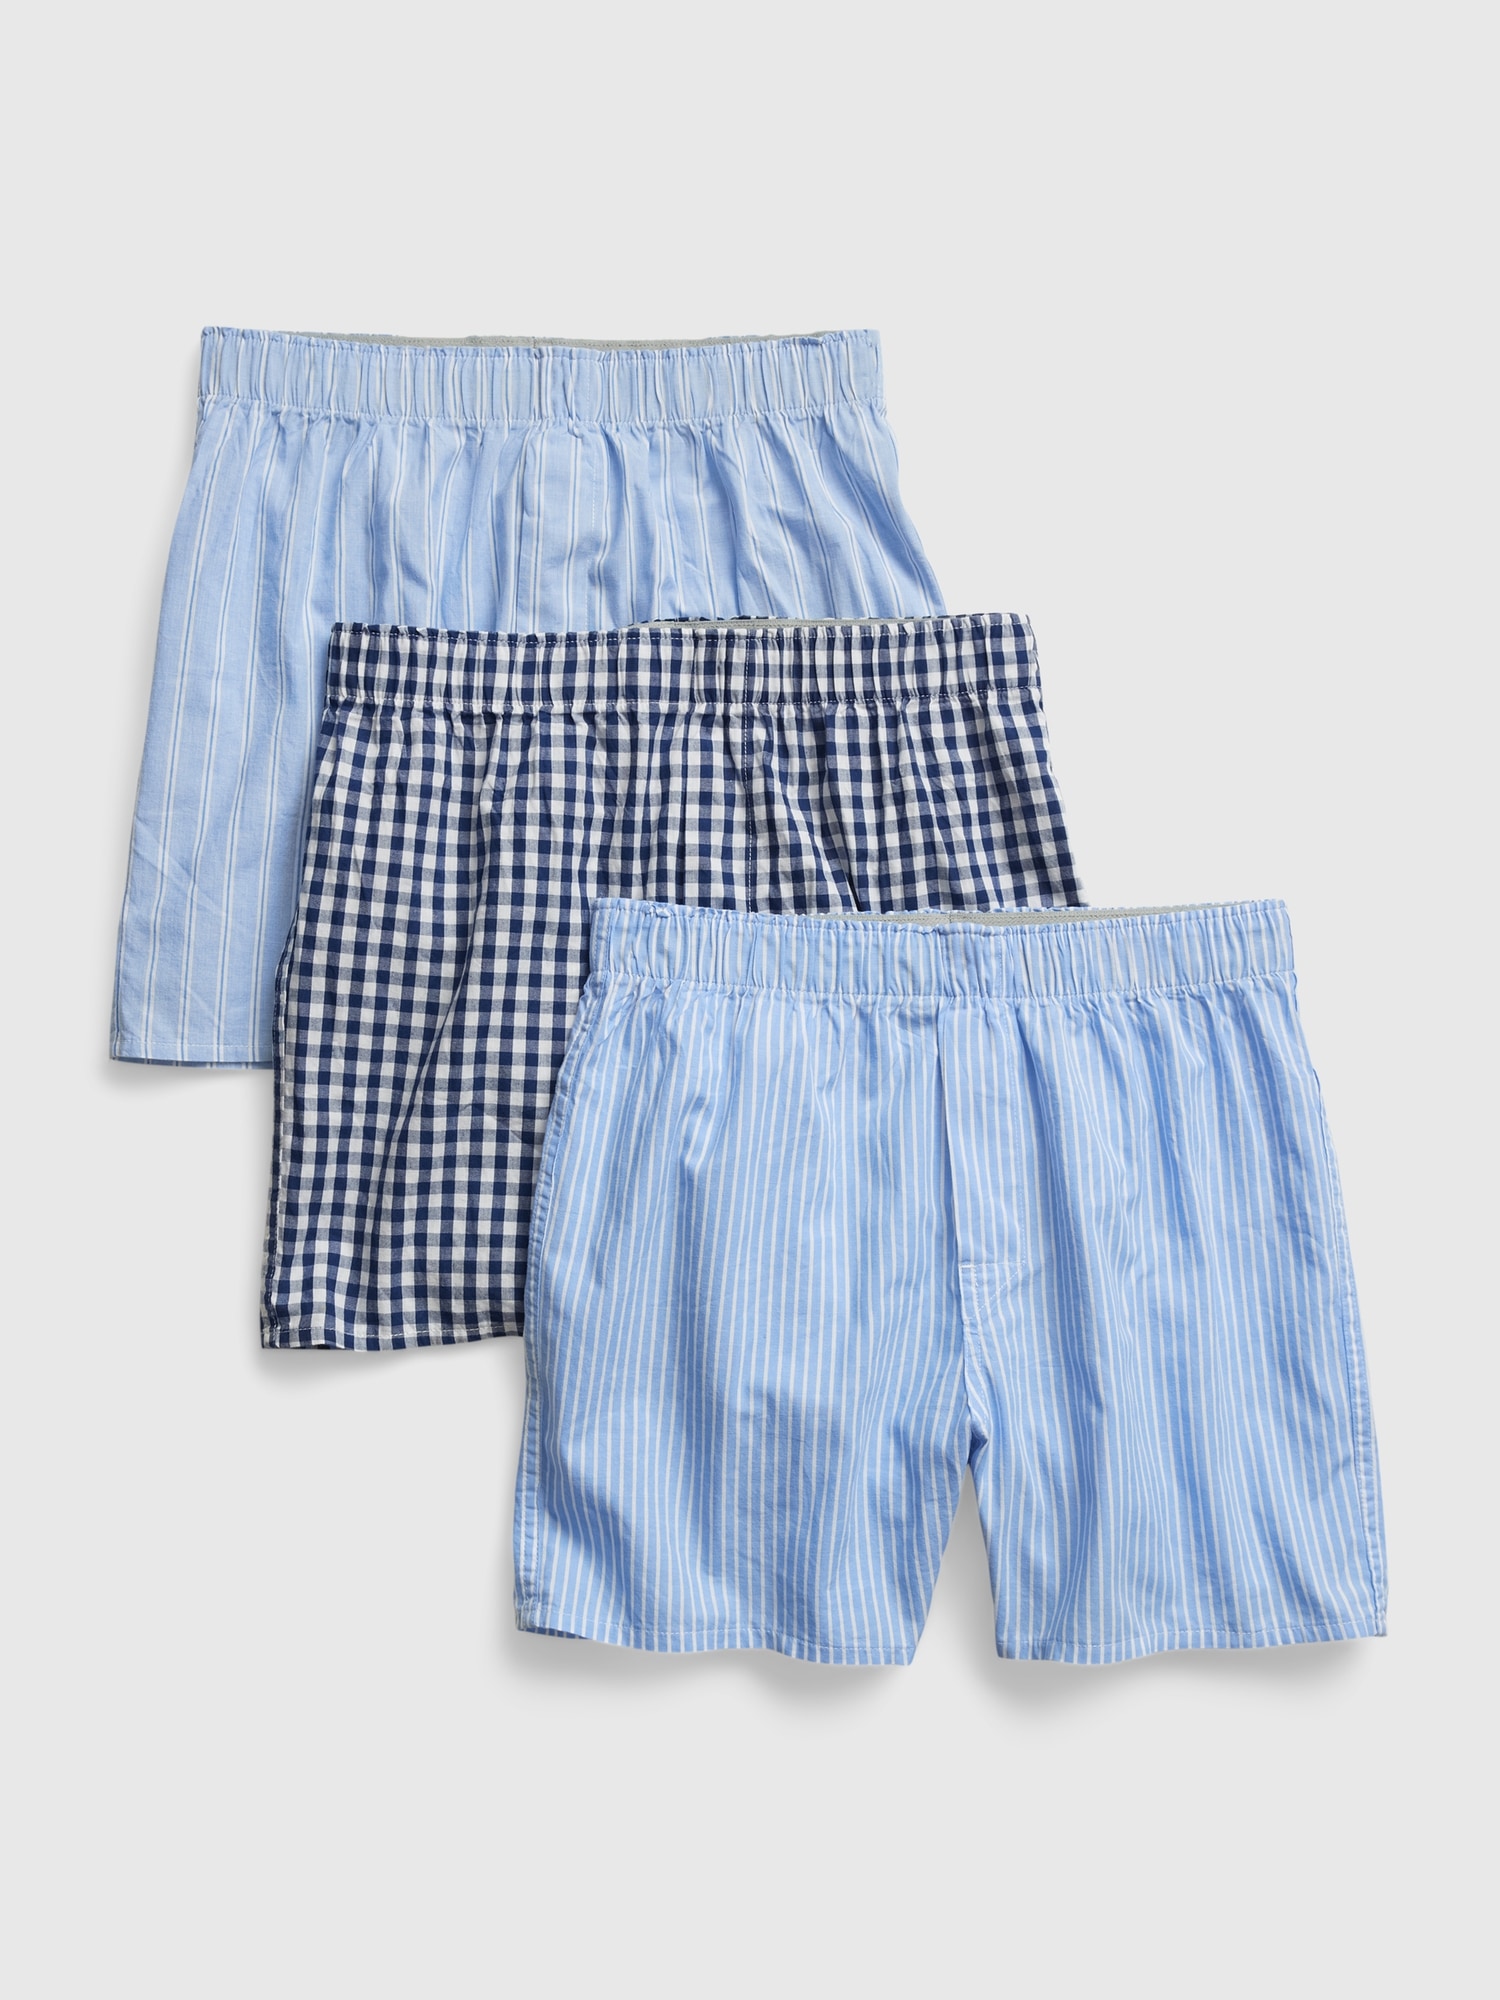 Hanford Men 100% Cotton Woven Boxer Shorts - Checkered SETJ (1PC/Singl –  HANFORD